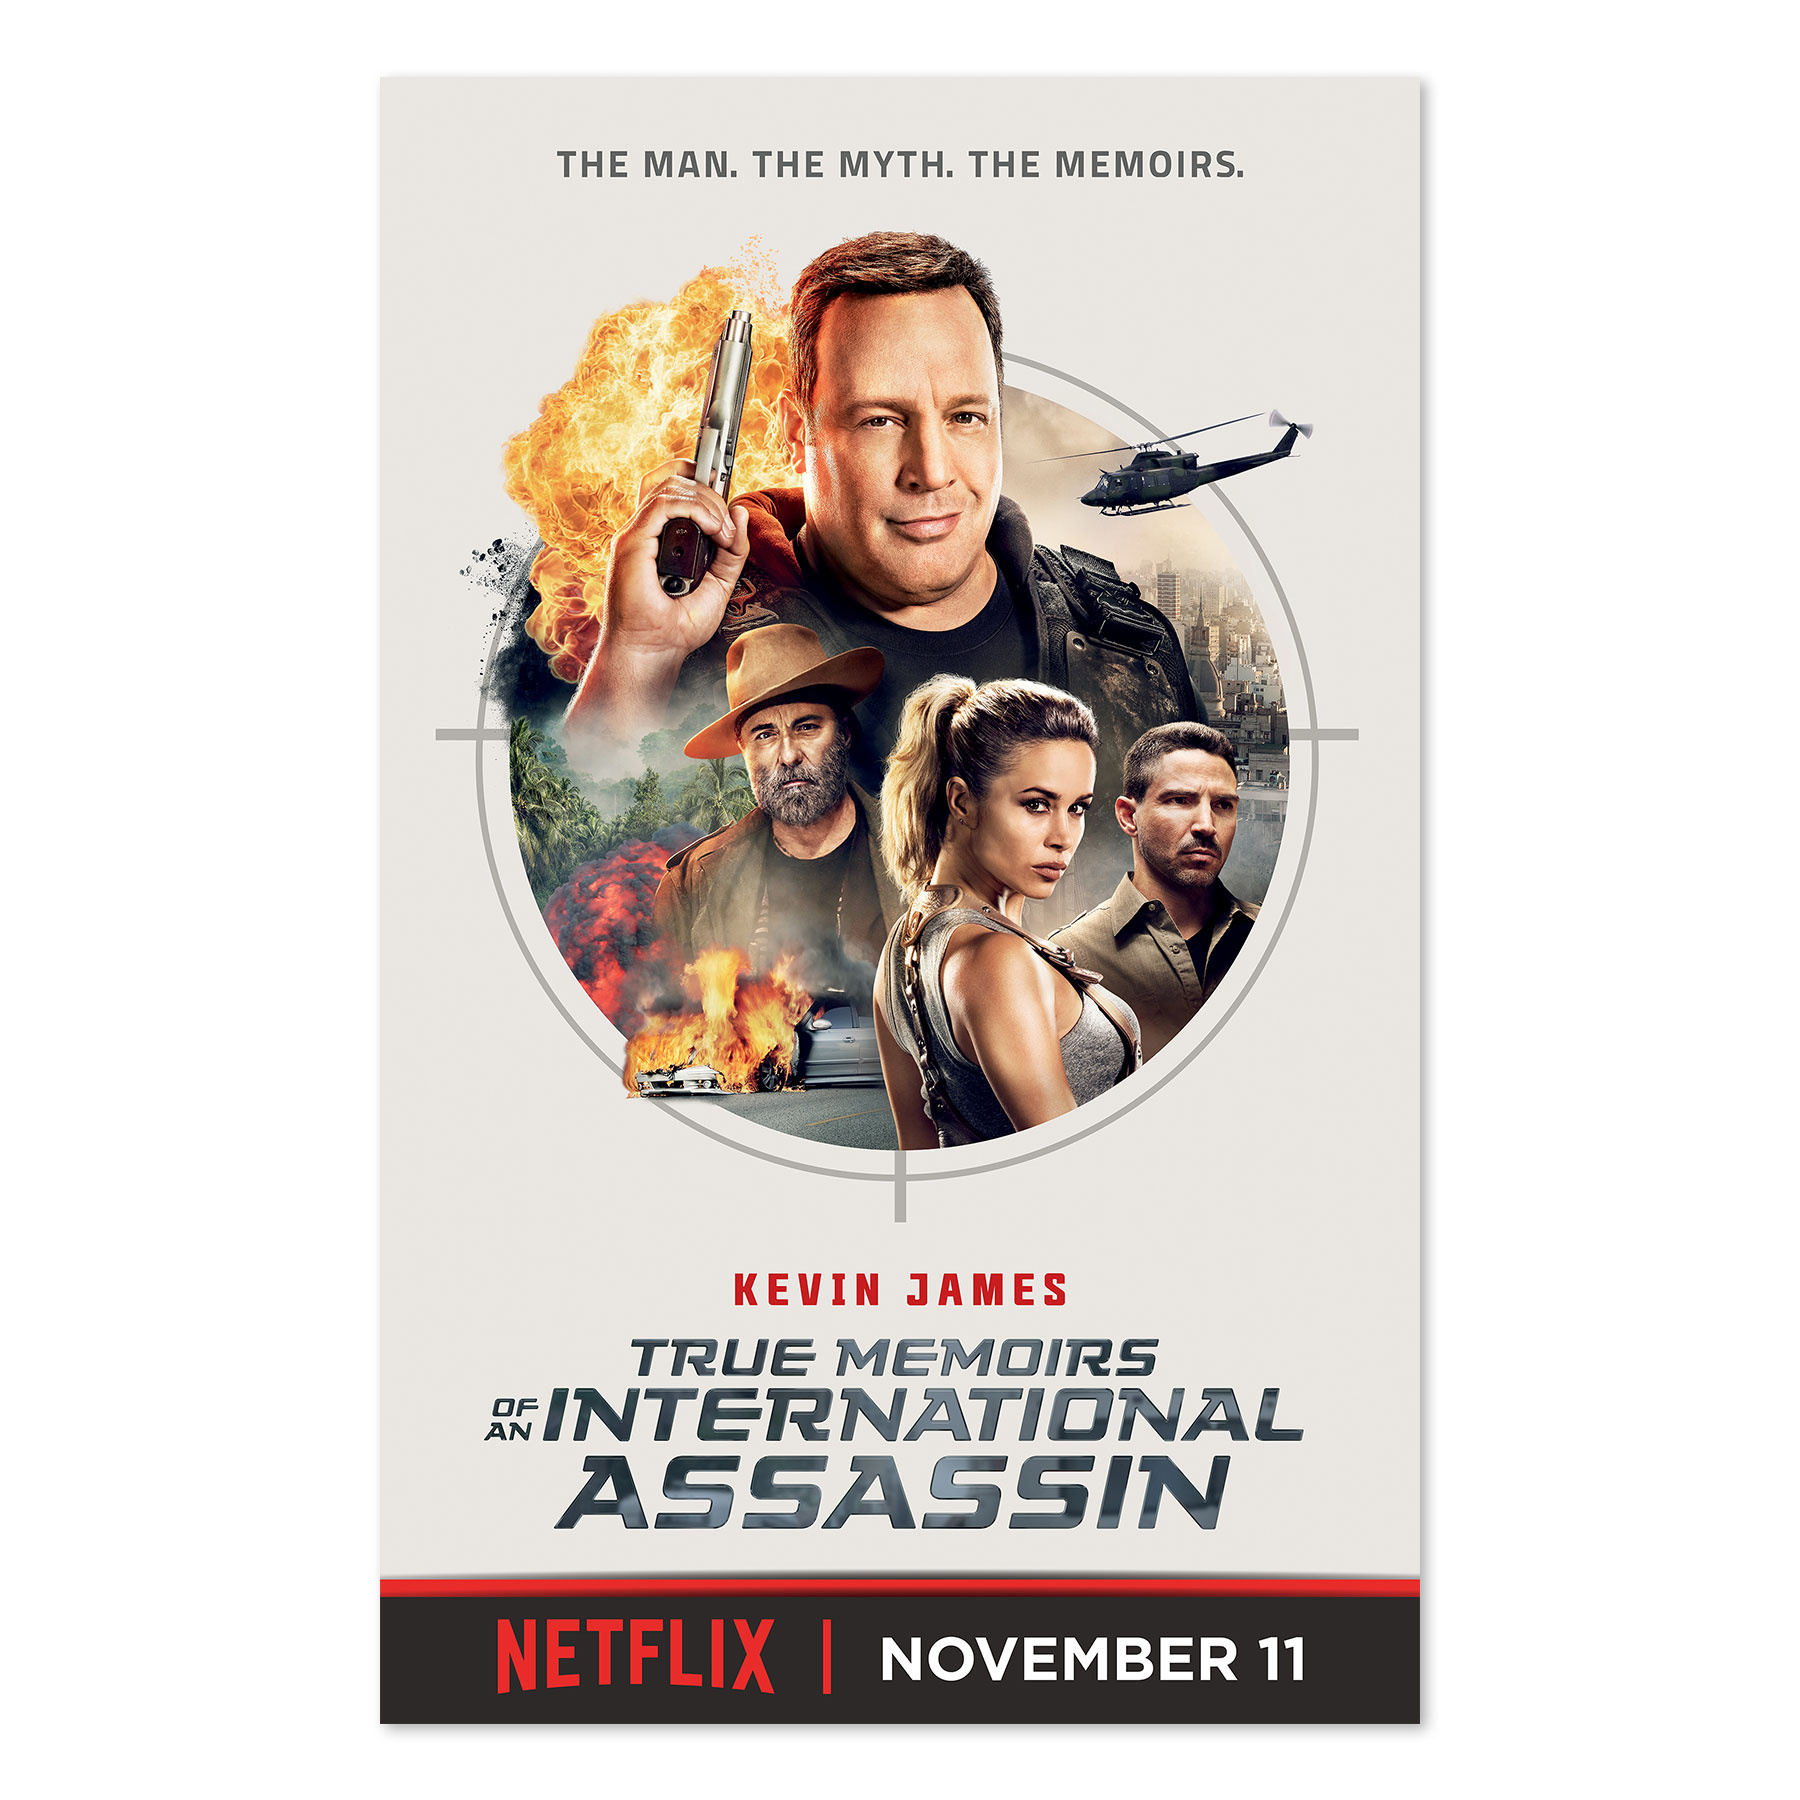 Kevin James Digital Banner for Netflix